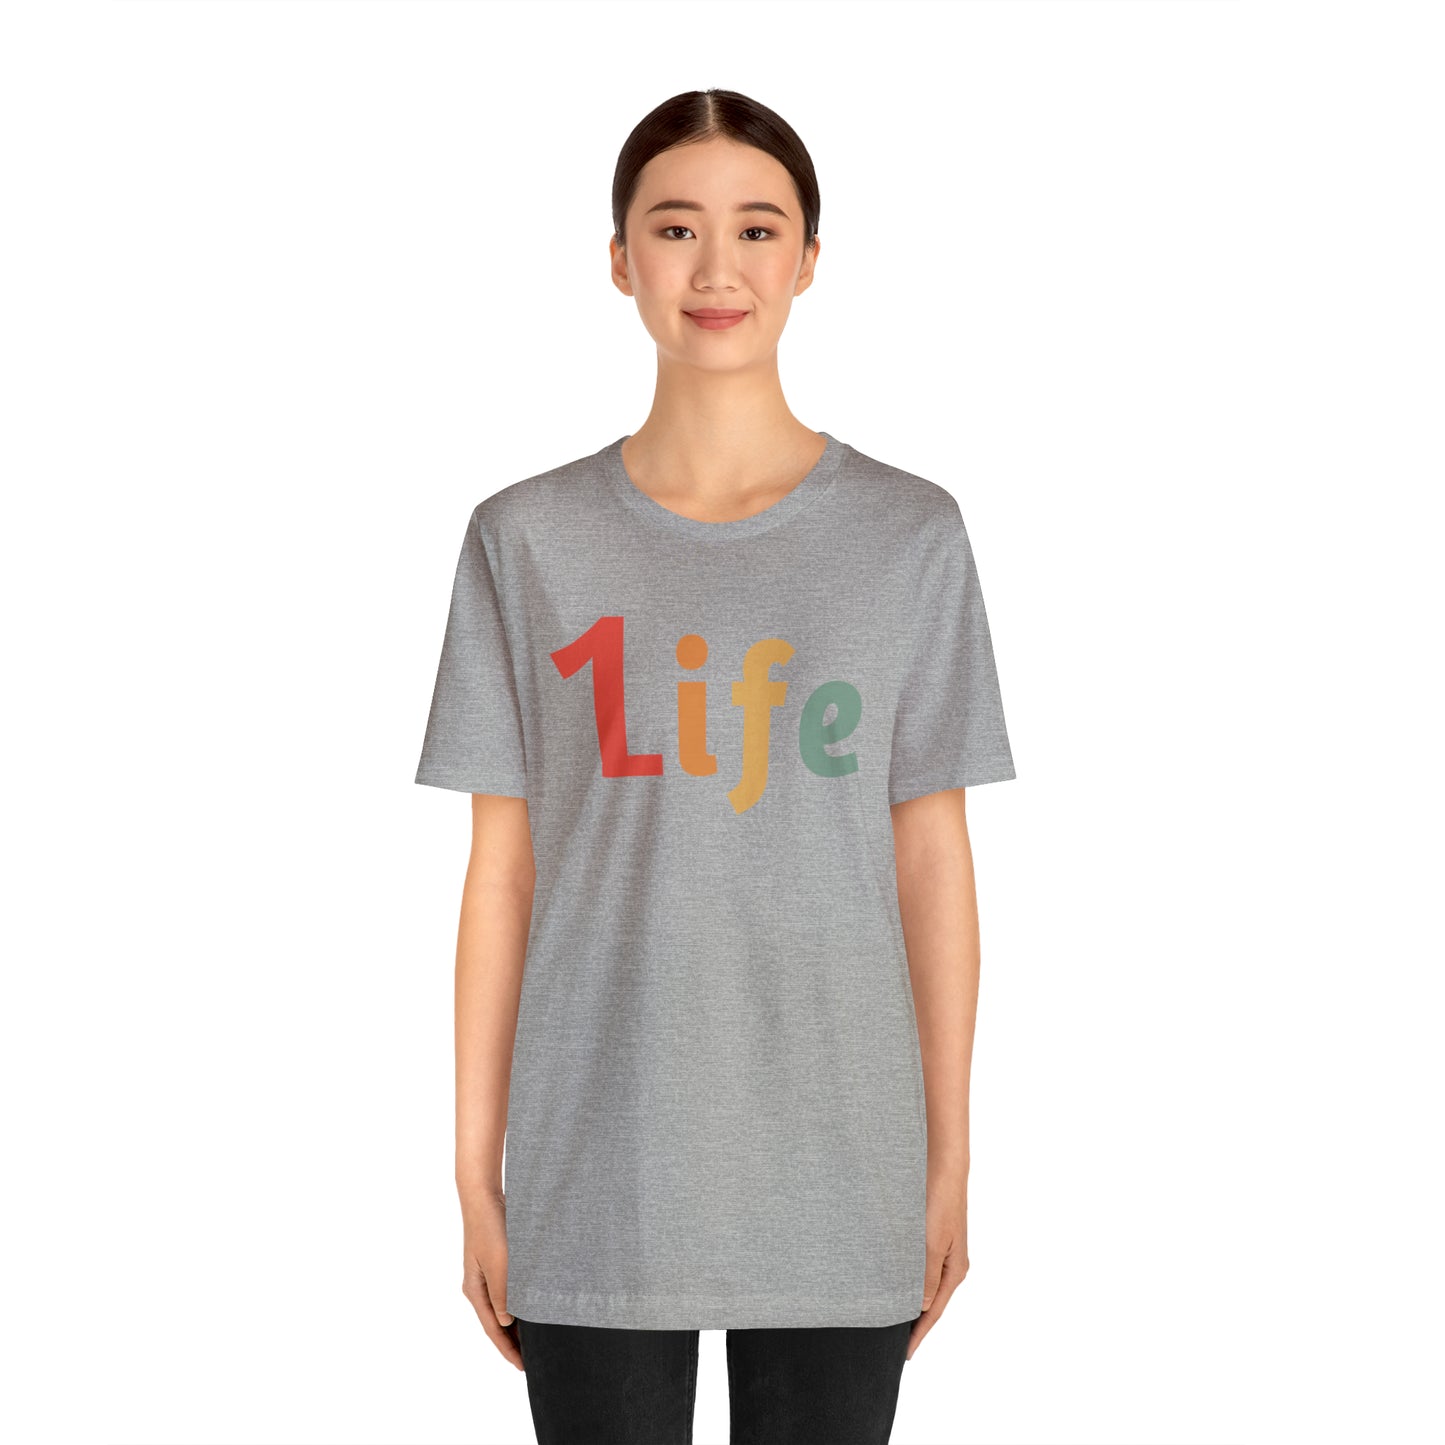 Retro One life Shirt 1life shirt Live Your Life You Only Have One Life To Live Retro Shirt